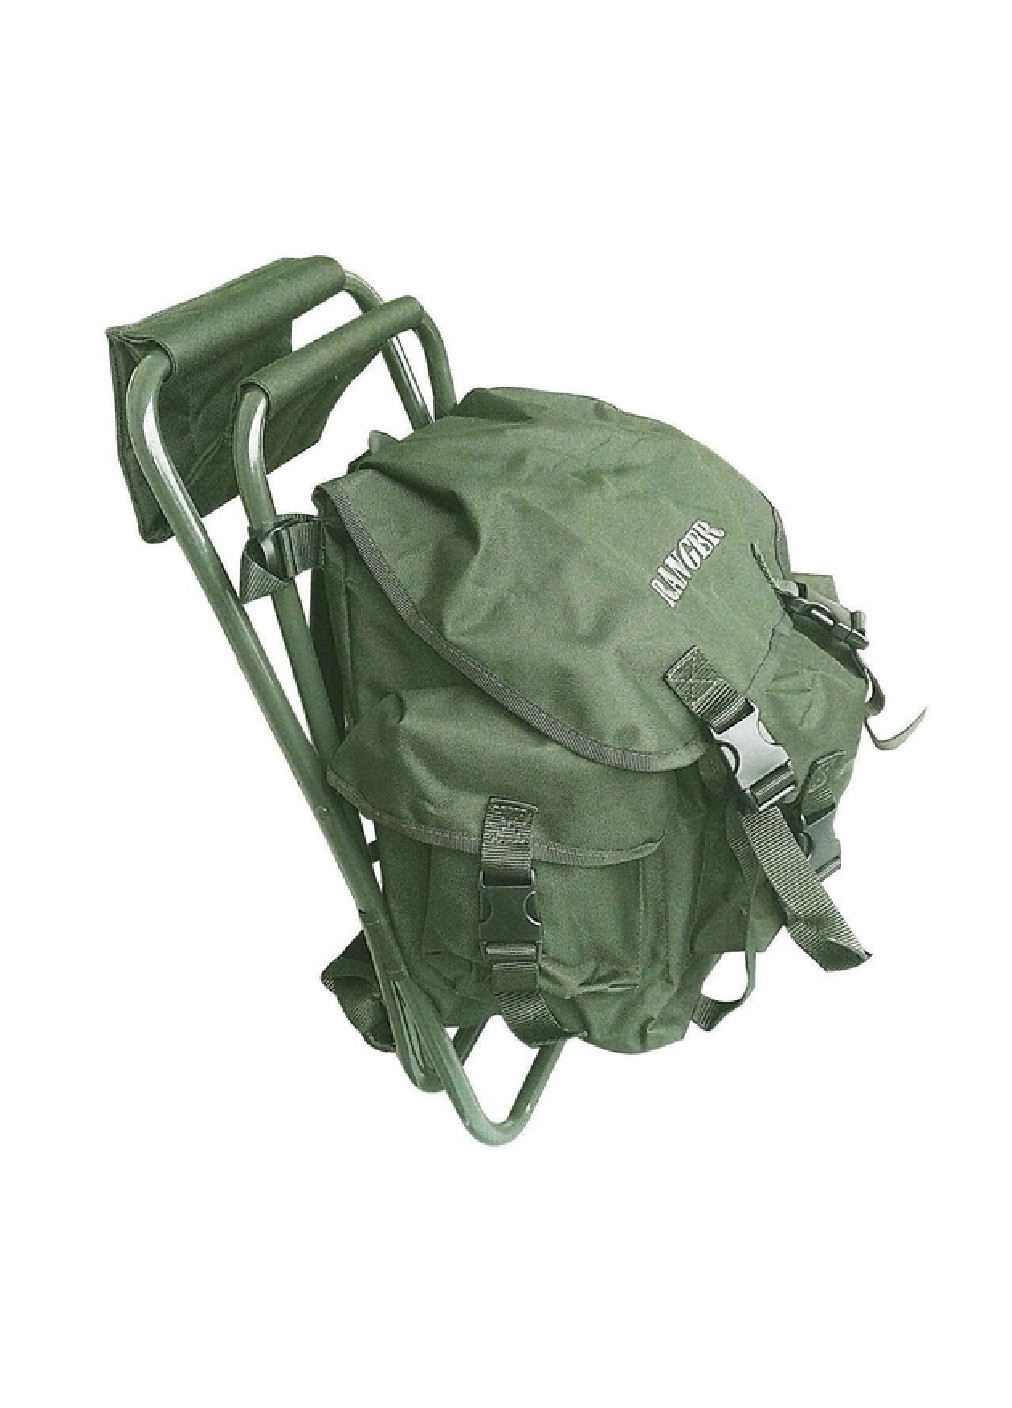 Раскладной компактный легкий стул без спинки с рюкзаком для отдыха дачи рыбалки туризма кемпинга (475300-Prob) Зеленый Unbranded (265391197)